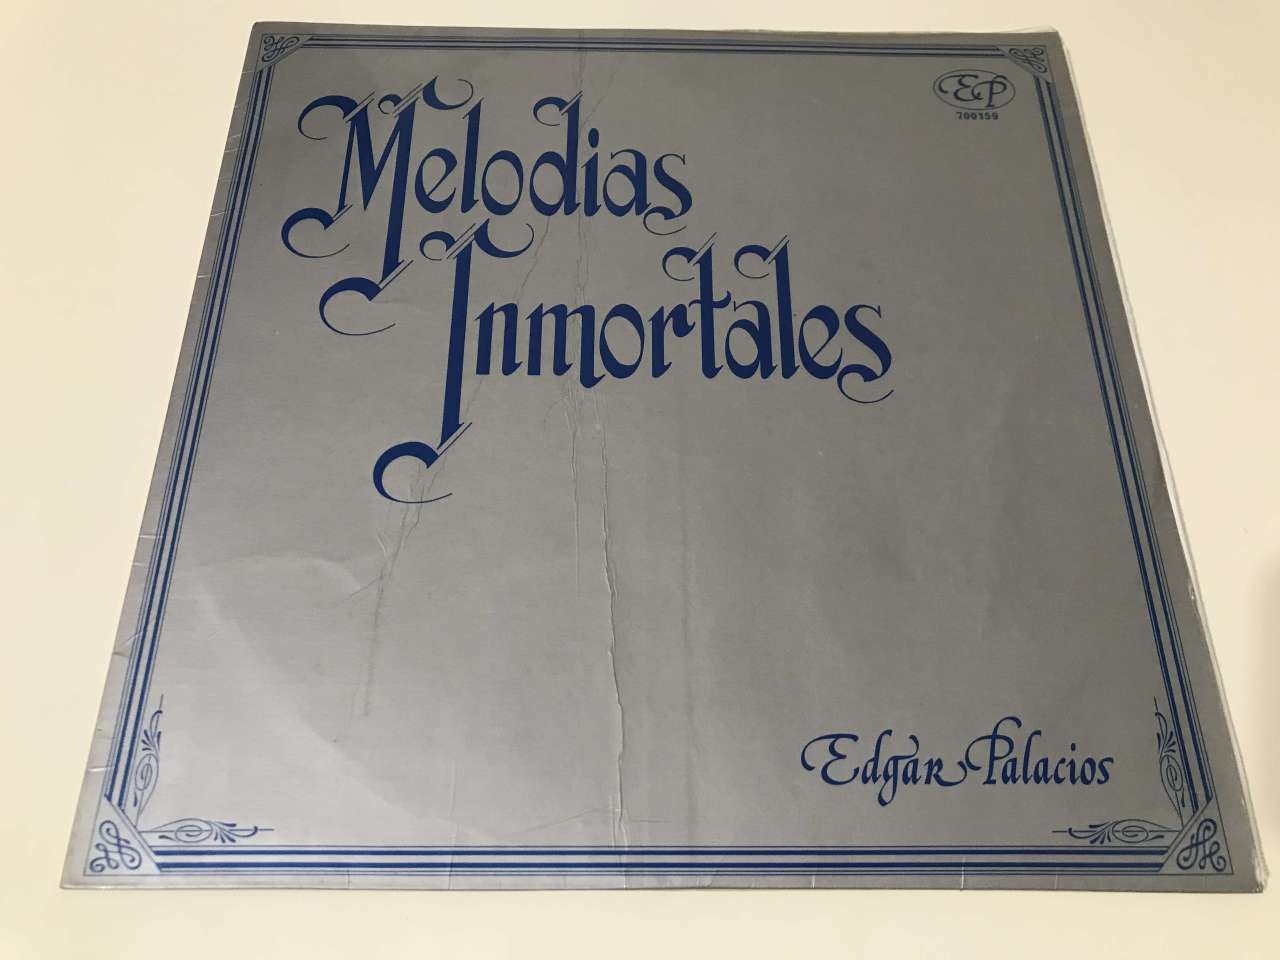 Edgar Palacios – Melodias Inmortales